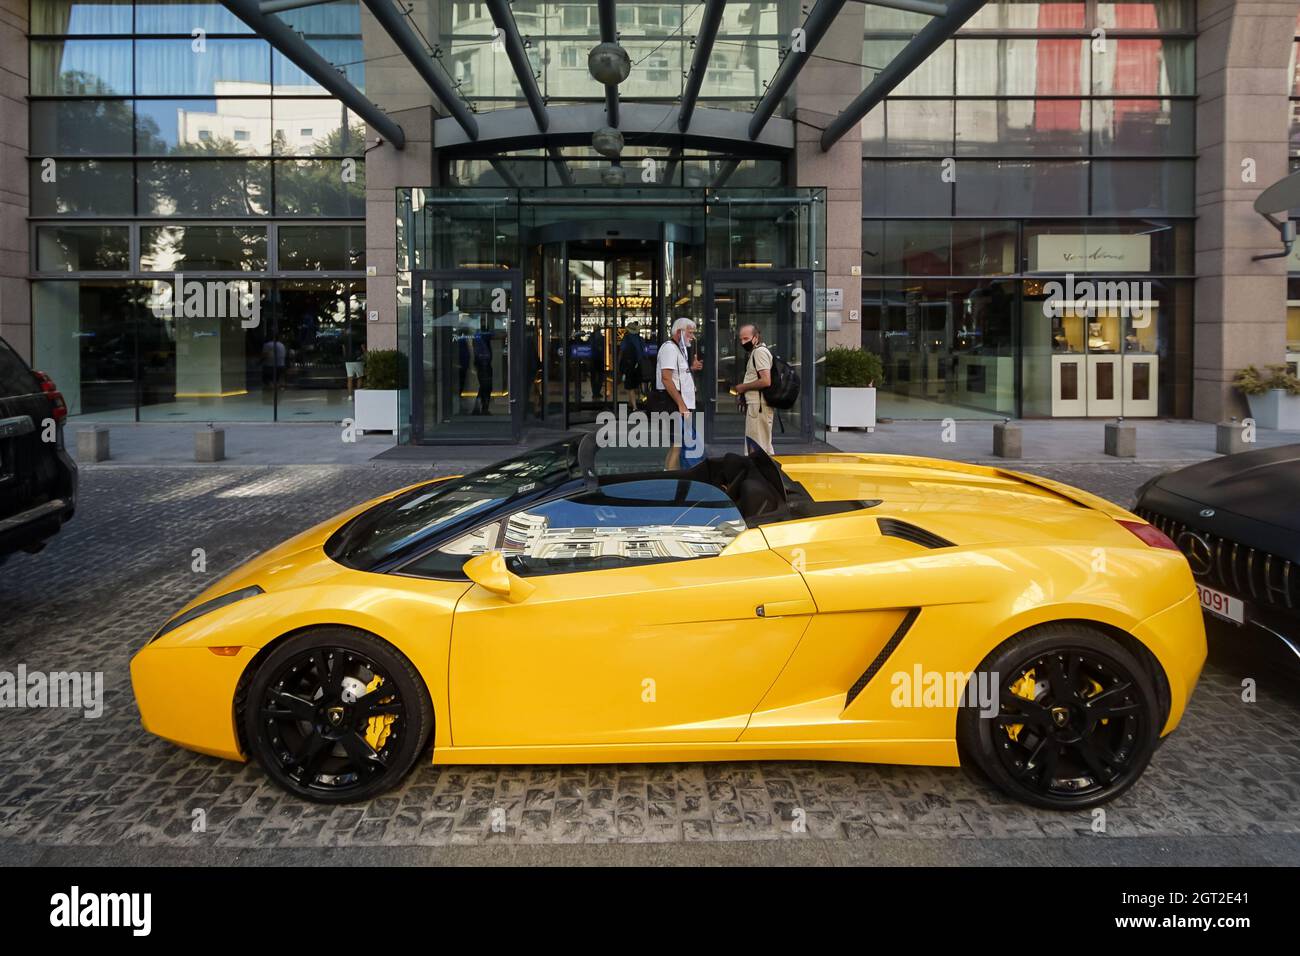 Bucarest, Romania - 17 agosto 2021: Un Lamborghini giallo 2006 Gallardo Spyder è parcheggiato di fronte all'ingresso del Radisson Blu Hotel Buchares Foto Stock